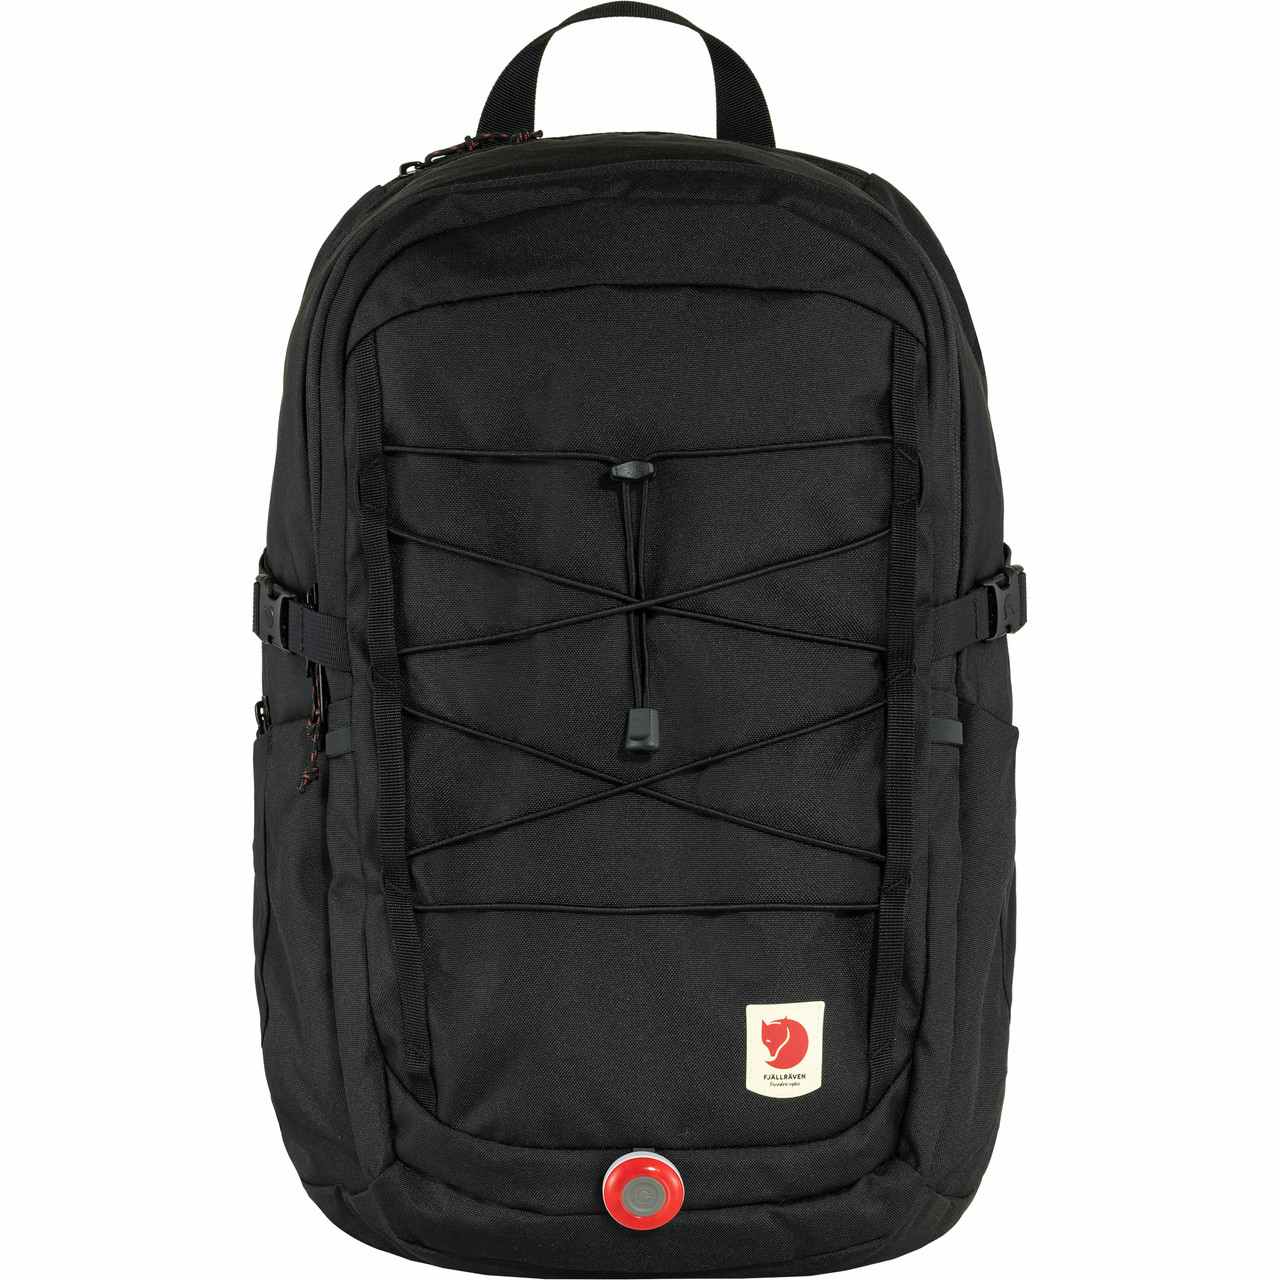 Skule 28 Backpack Black